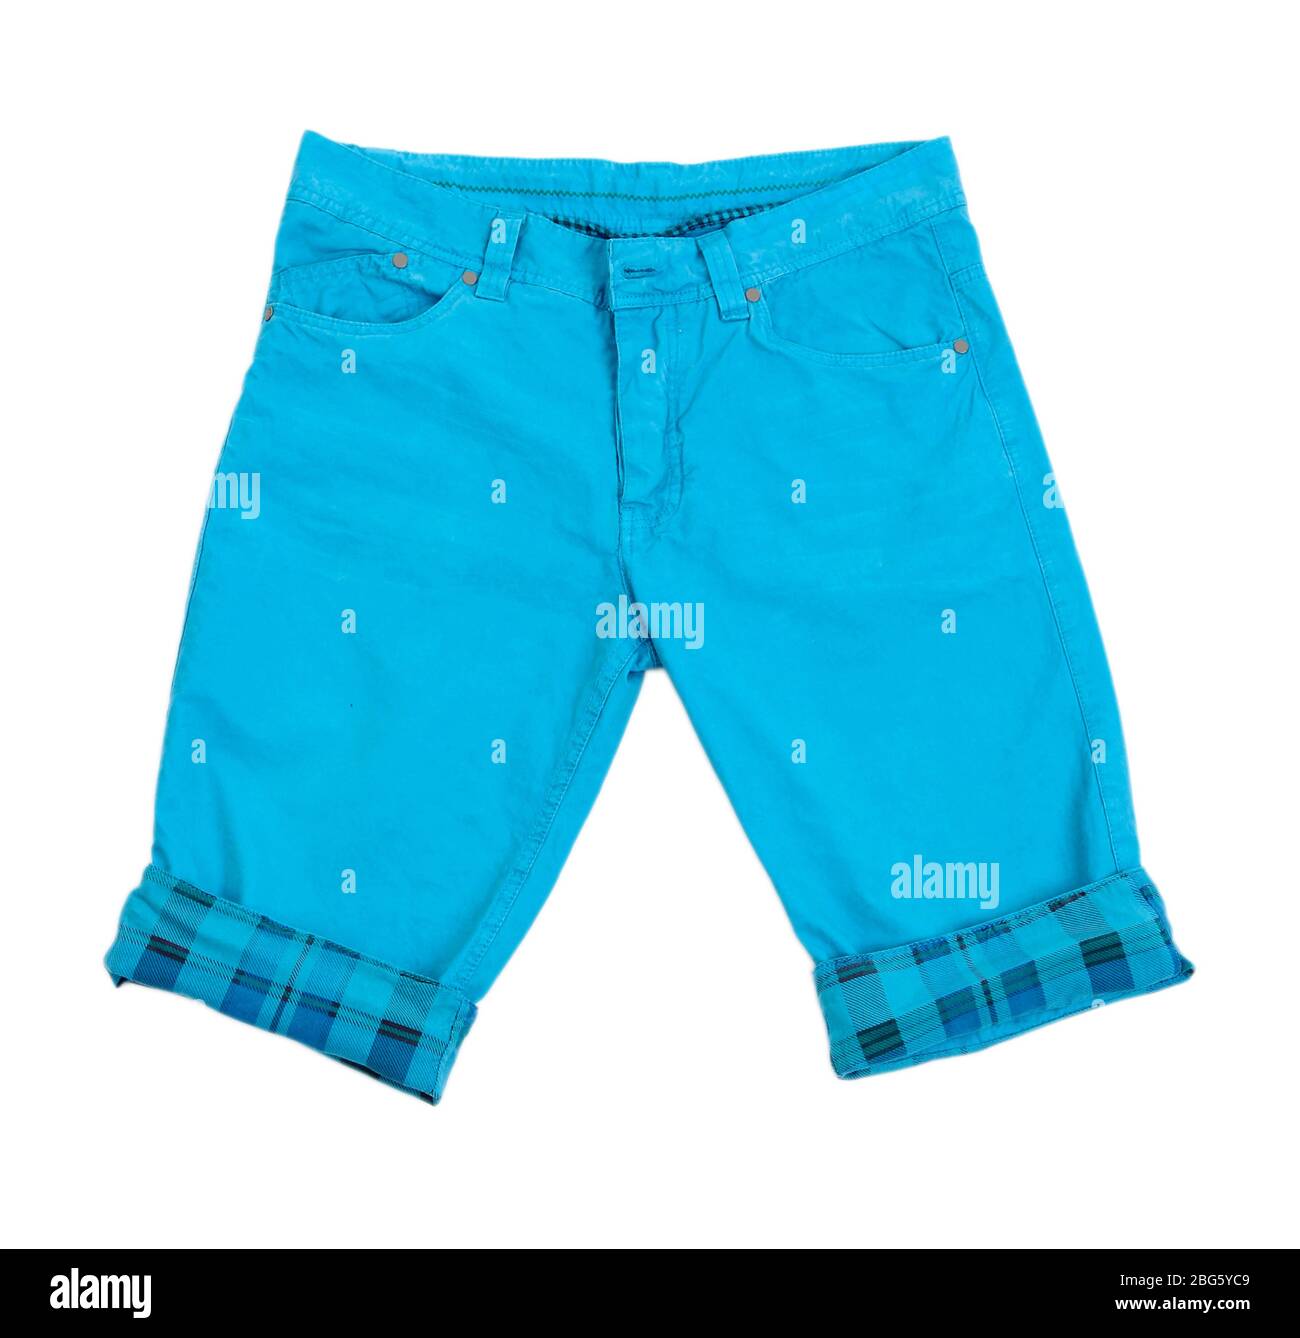 Men's shorts isolated on white Stock Photo - Alamy